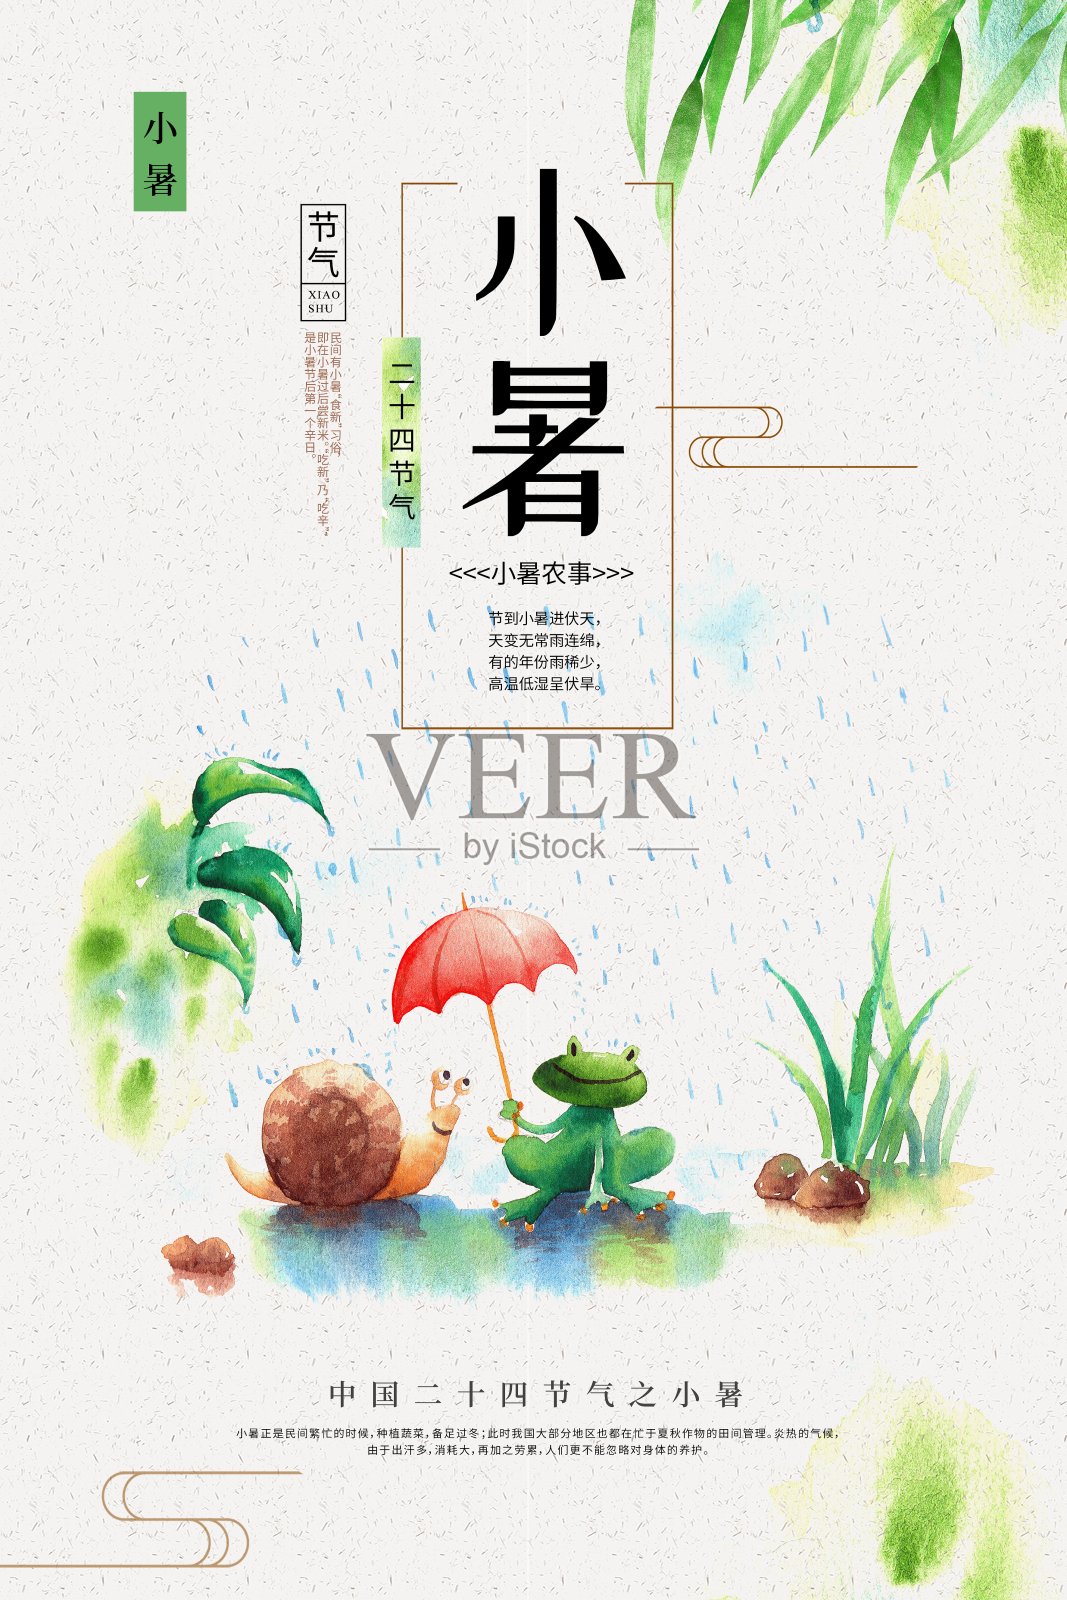 简约中国风小暑24节气节日海报设计模板素材